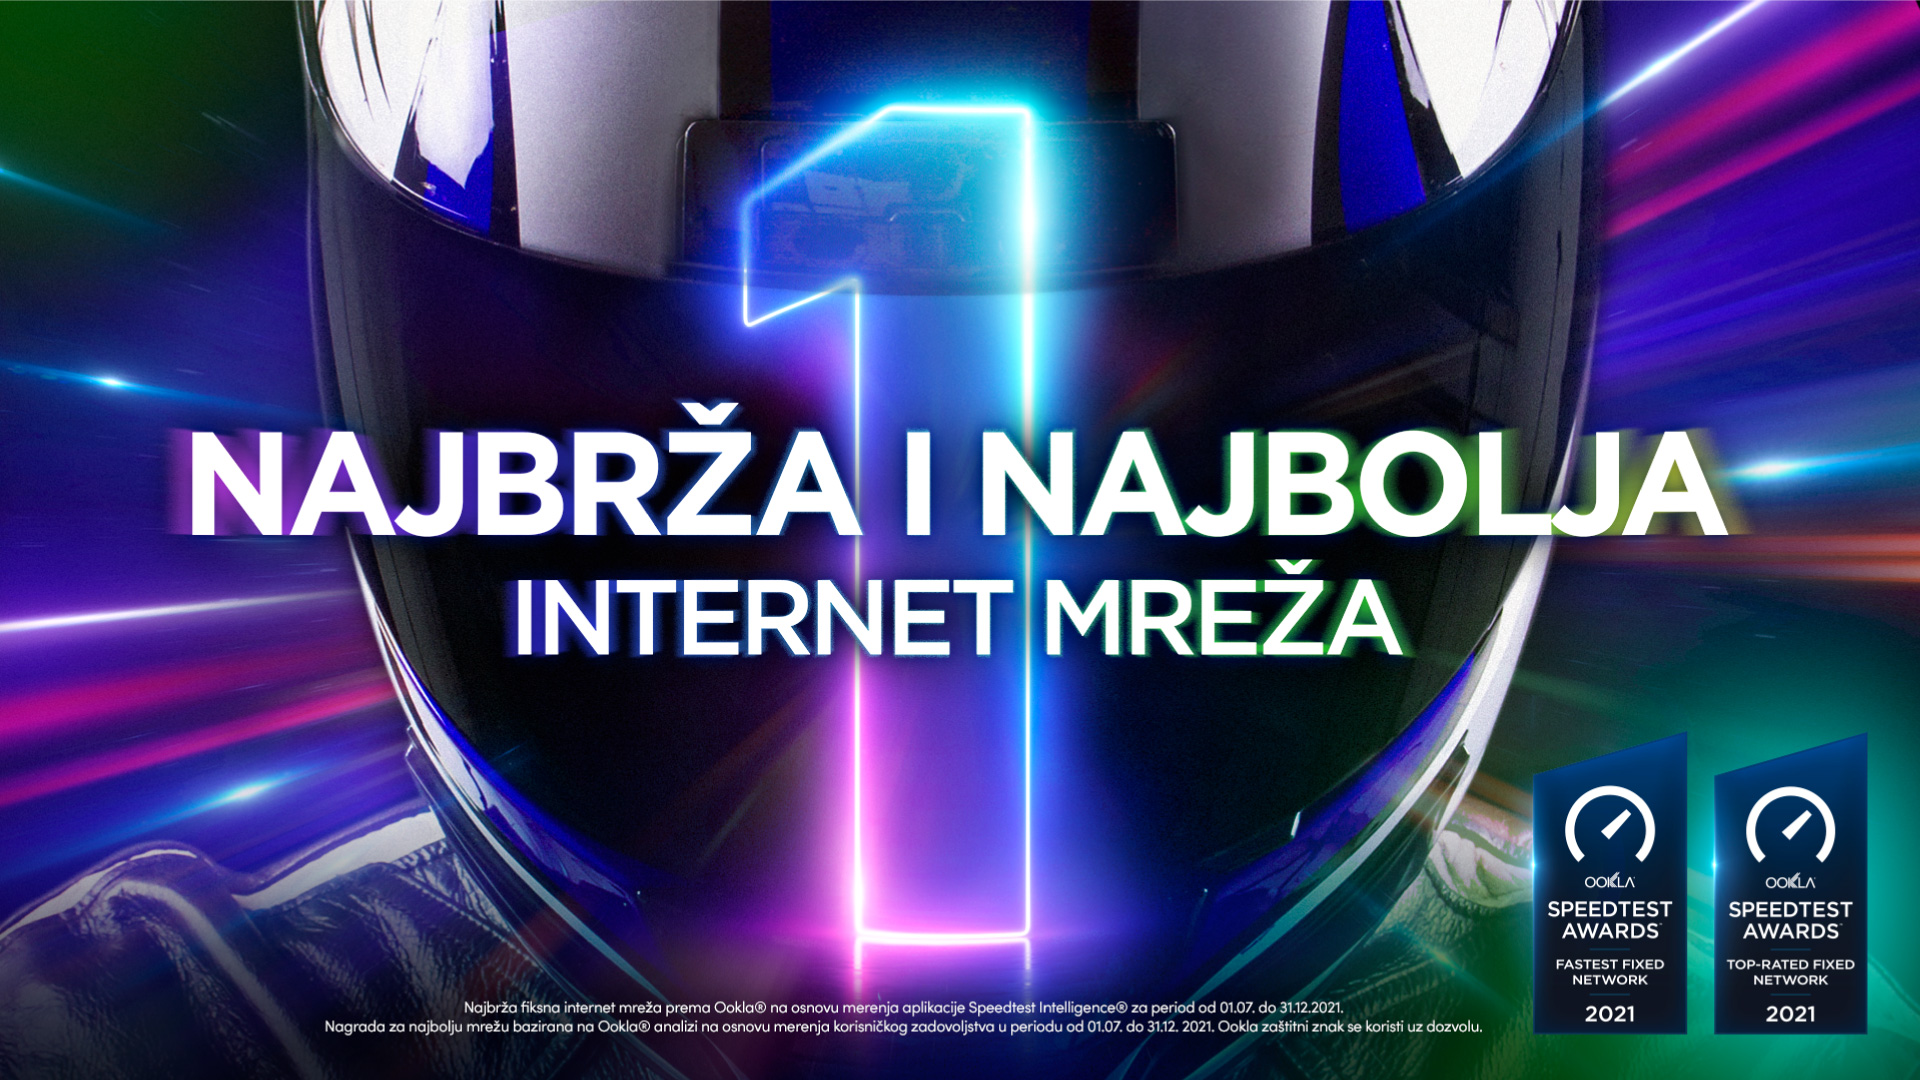 SBB ima najbrži internet i najbolju mrežu u Srbiji, pokazalo istraživanje kompanije Ookla®